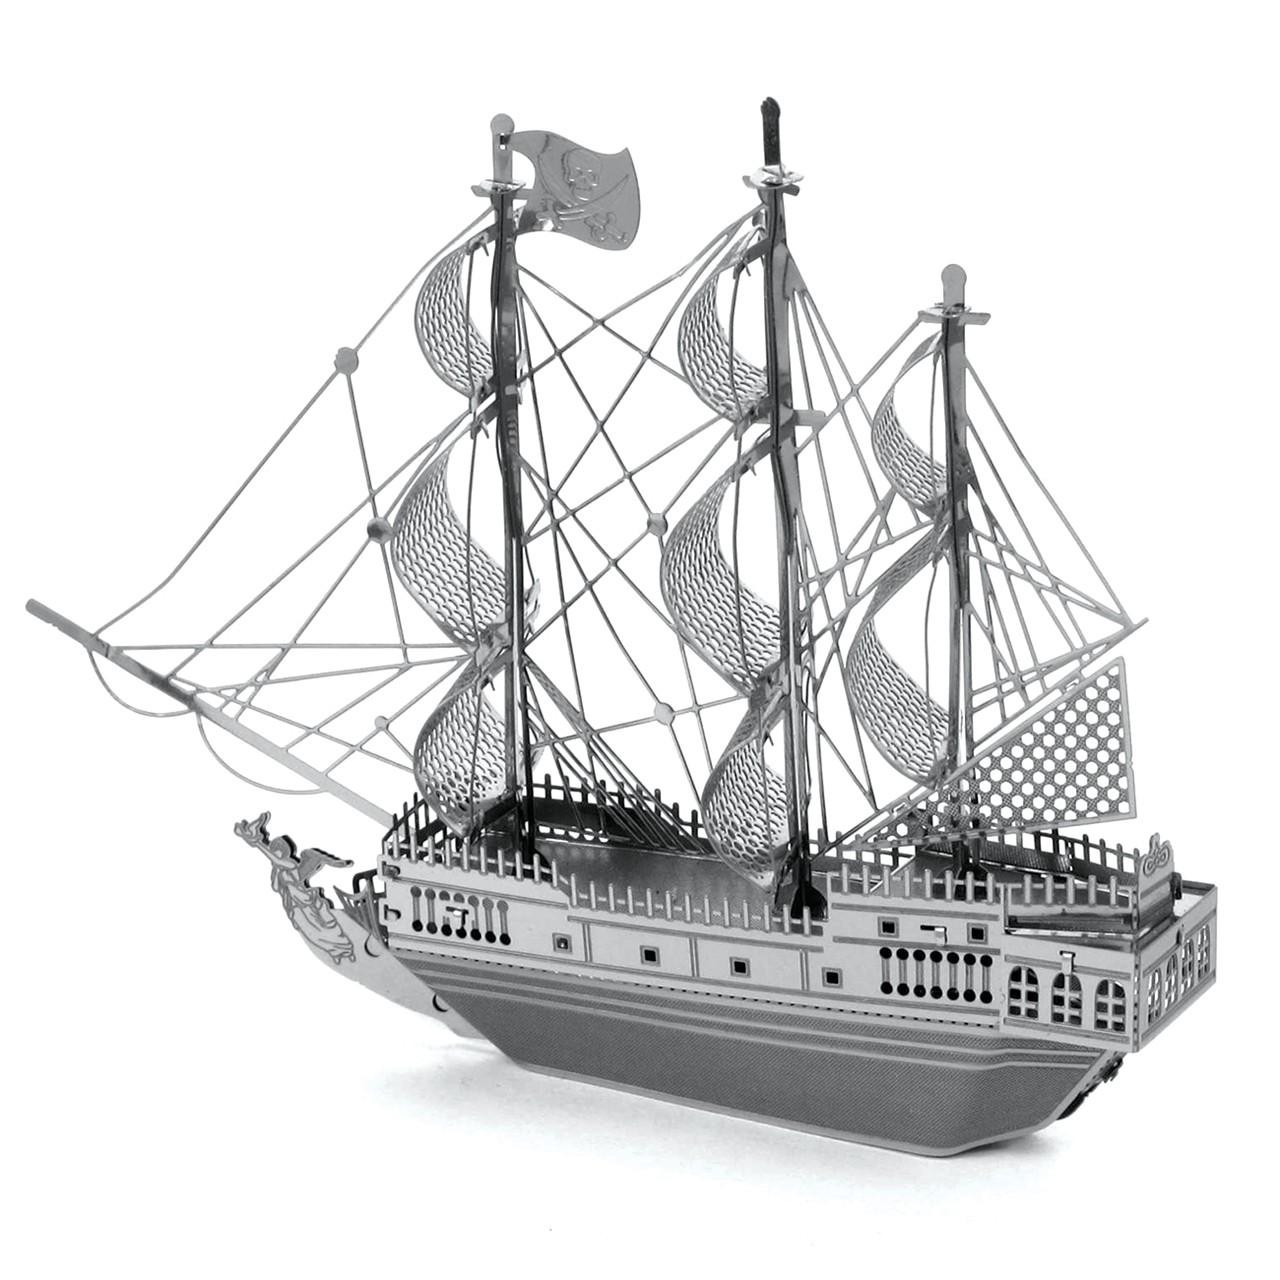 Maquette puzzle 3D la Perle noire (Black Pearl) en métal